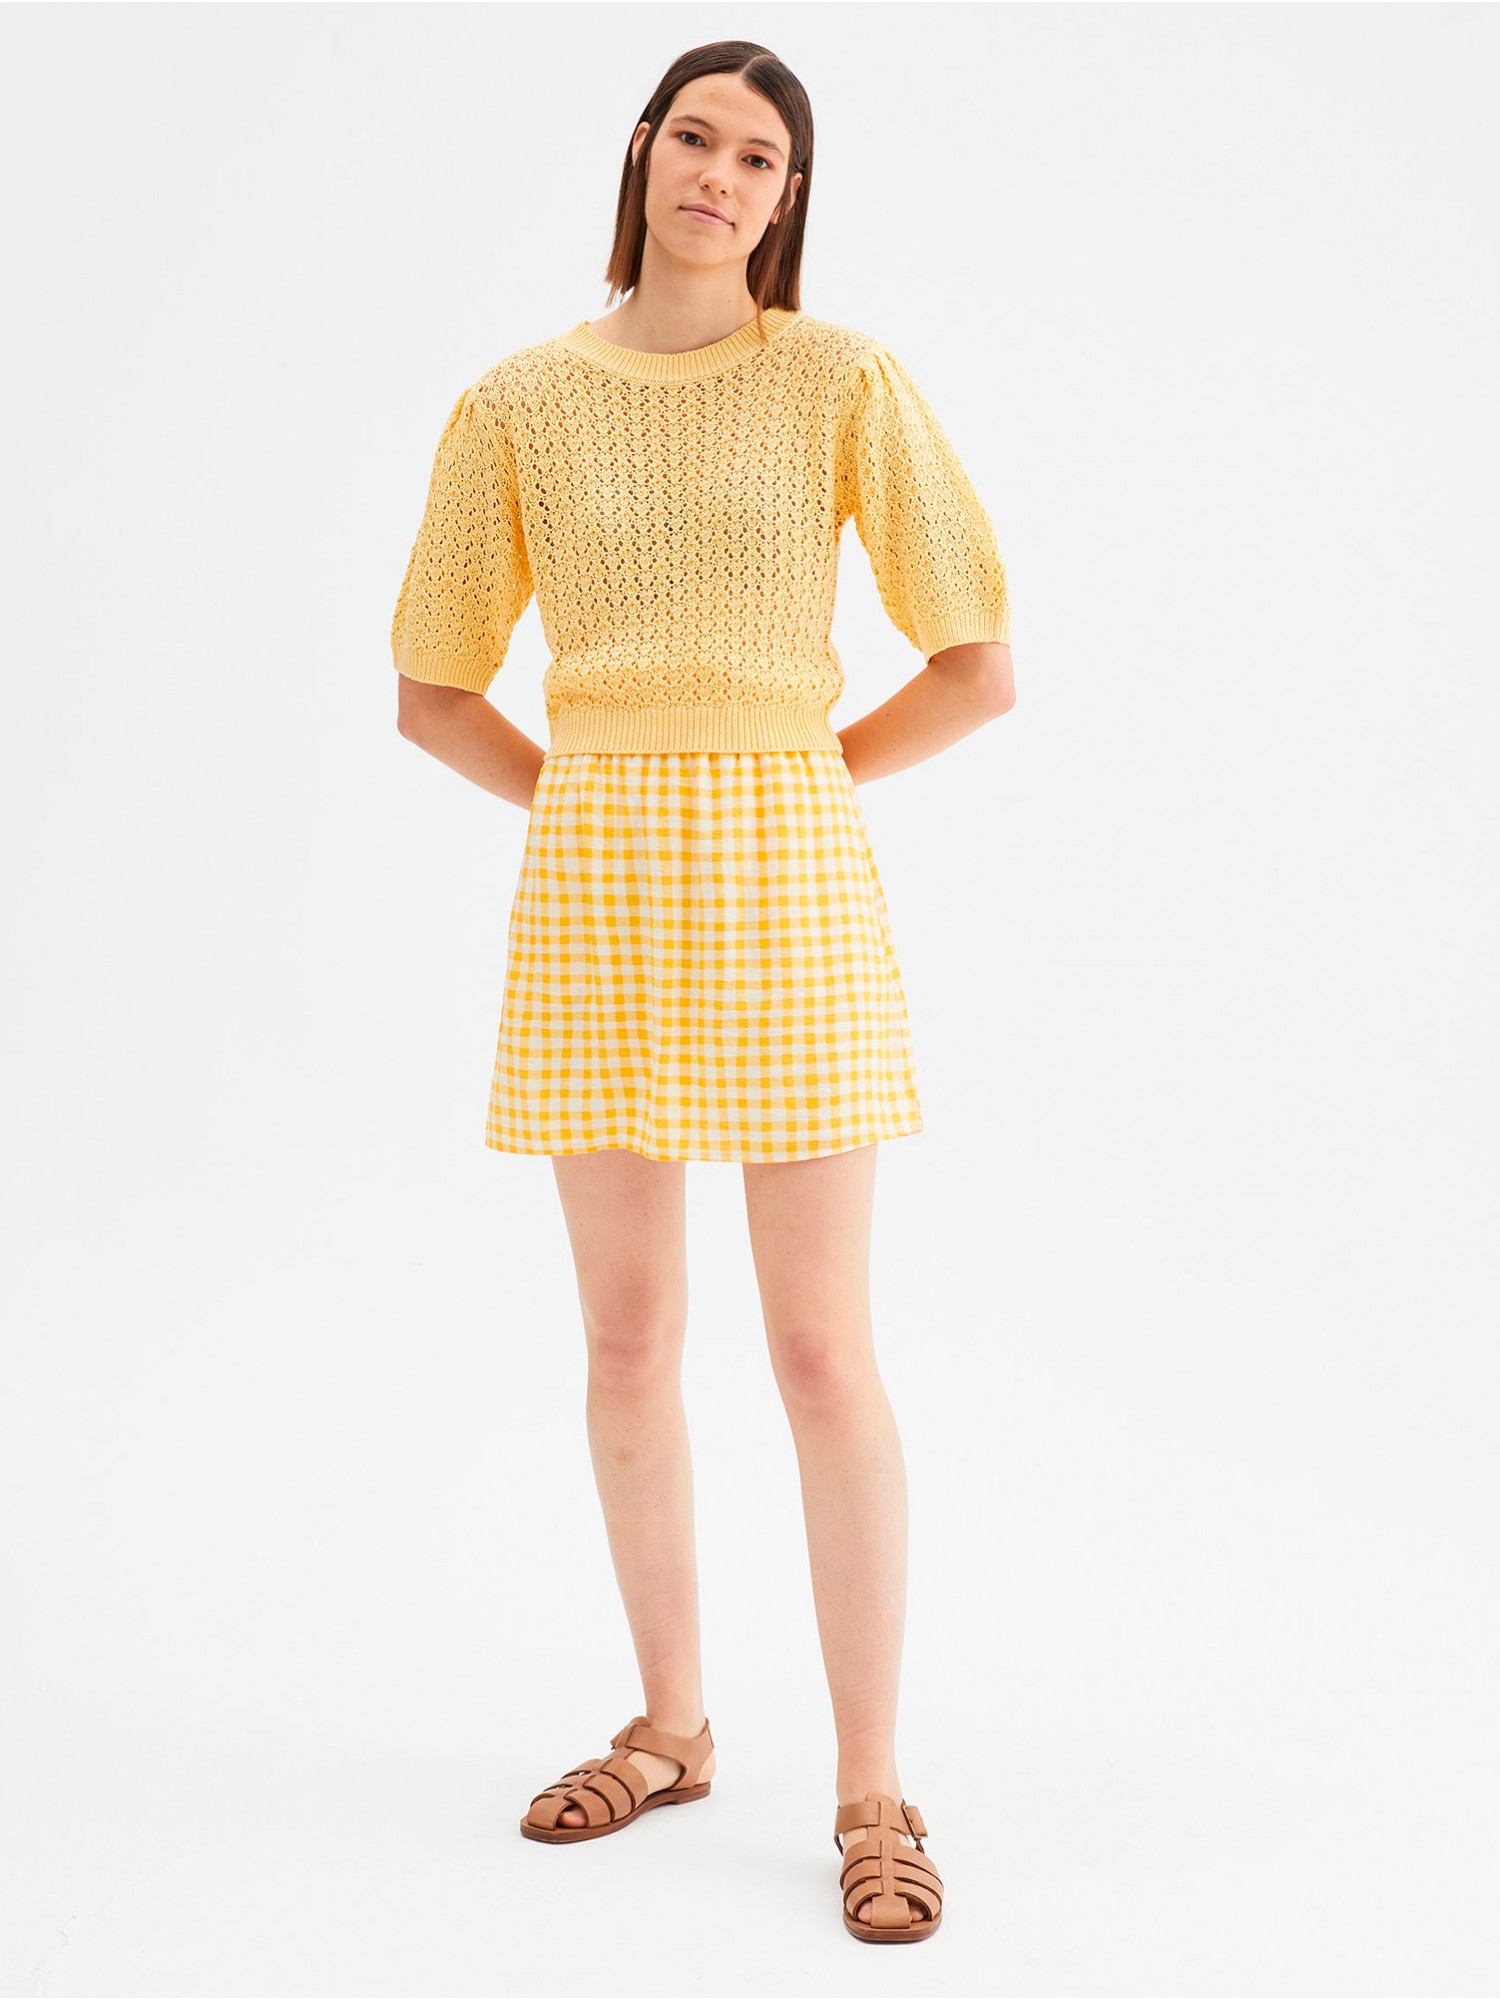 Modelo de falda corta amarilla de mujer